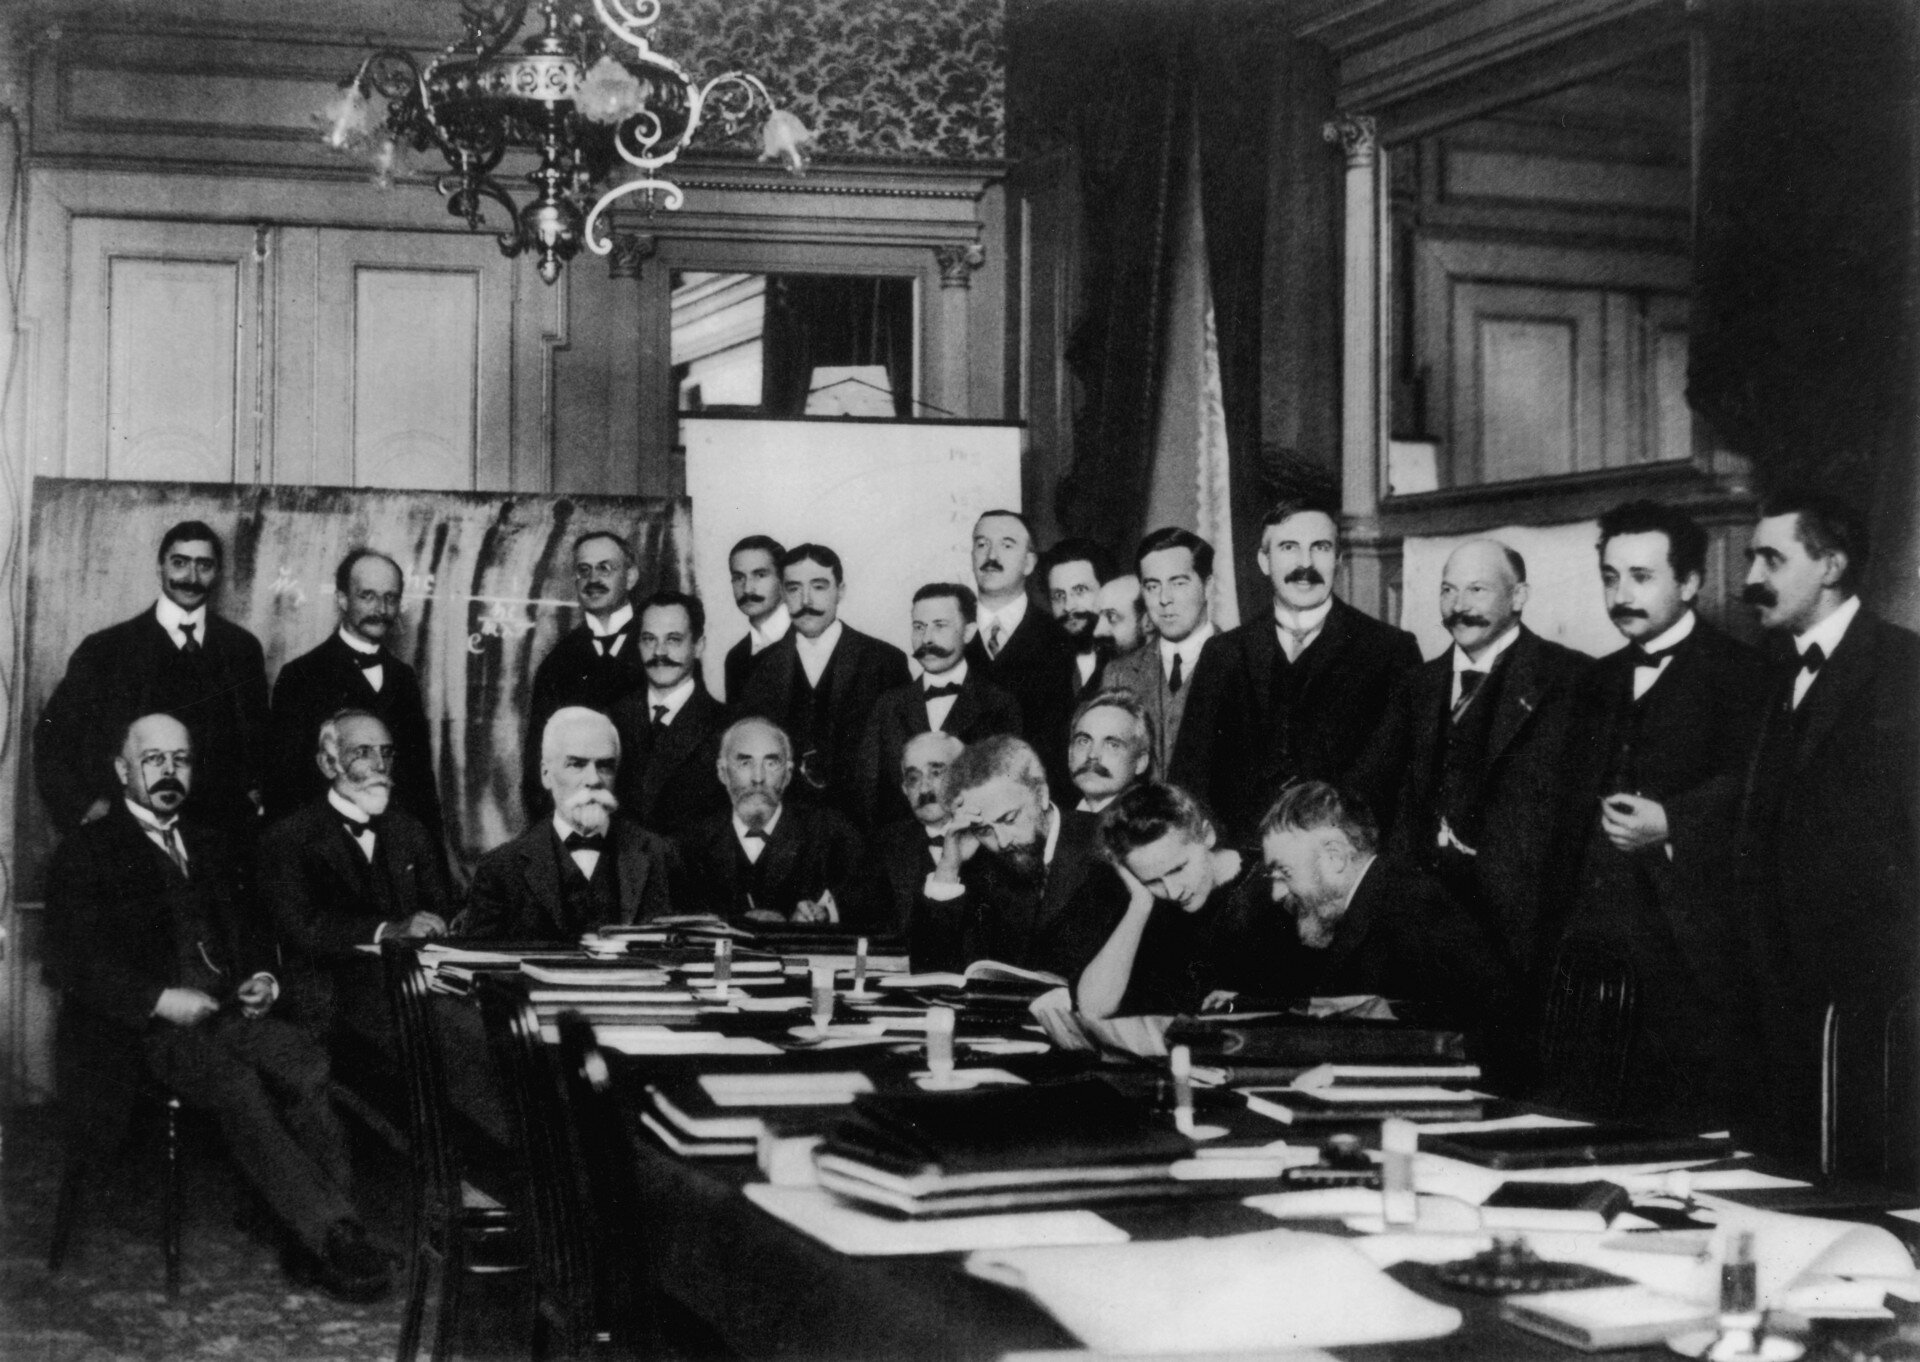 Audiobook zilustrowany jest czarno‑białym zdjęciem przedstawiającym naukowców uczestników pierwszego Kongresu Solvaya w Brukseli. Wokół dużego stołu, zasłanego książkami, zebrały się 24 osoby w eleganckich, ciemnych ubraniach. 9 osób siedzi za stołem, pozostałe stoją za nimi.